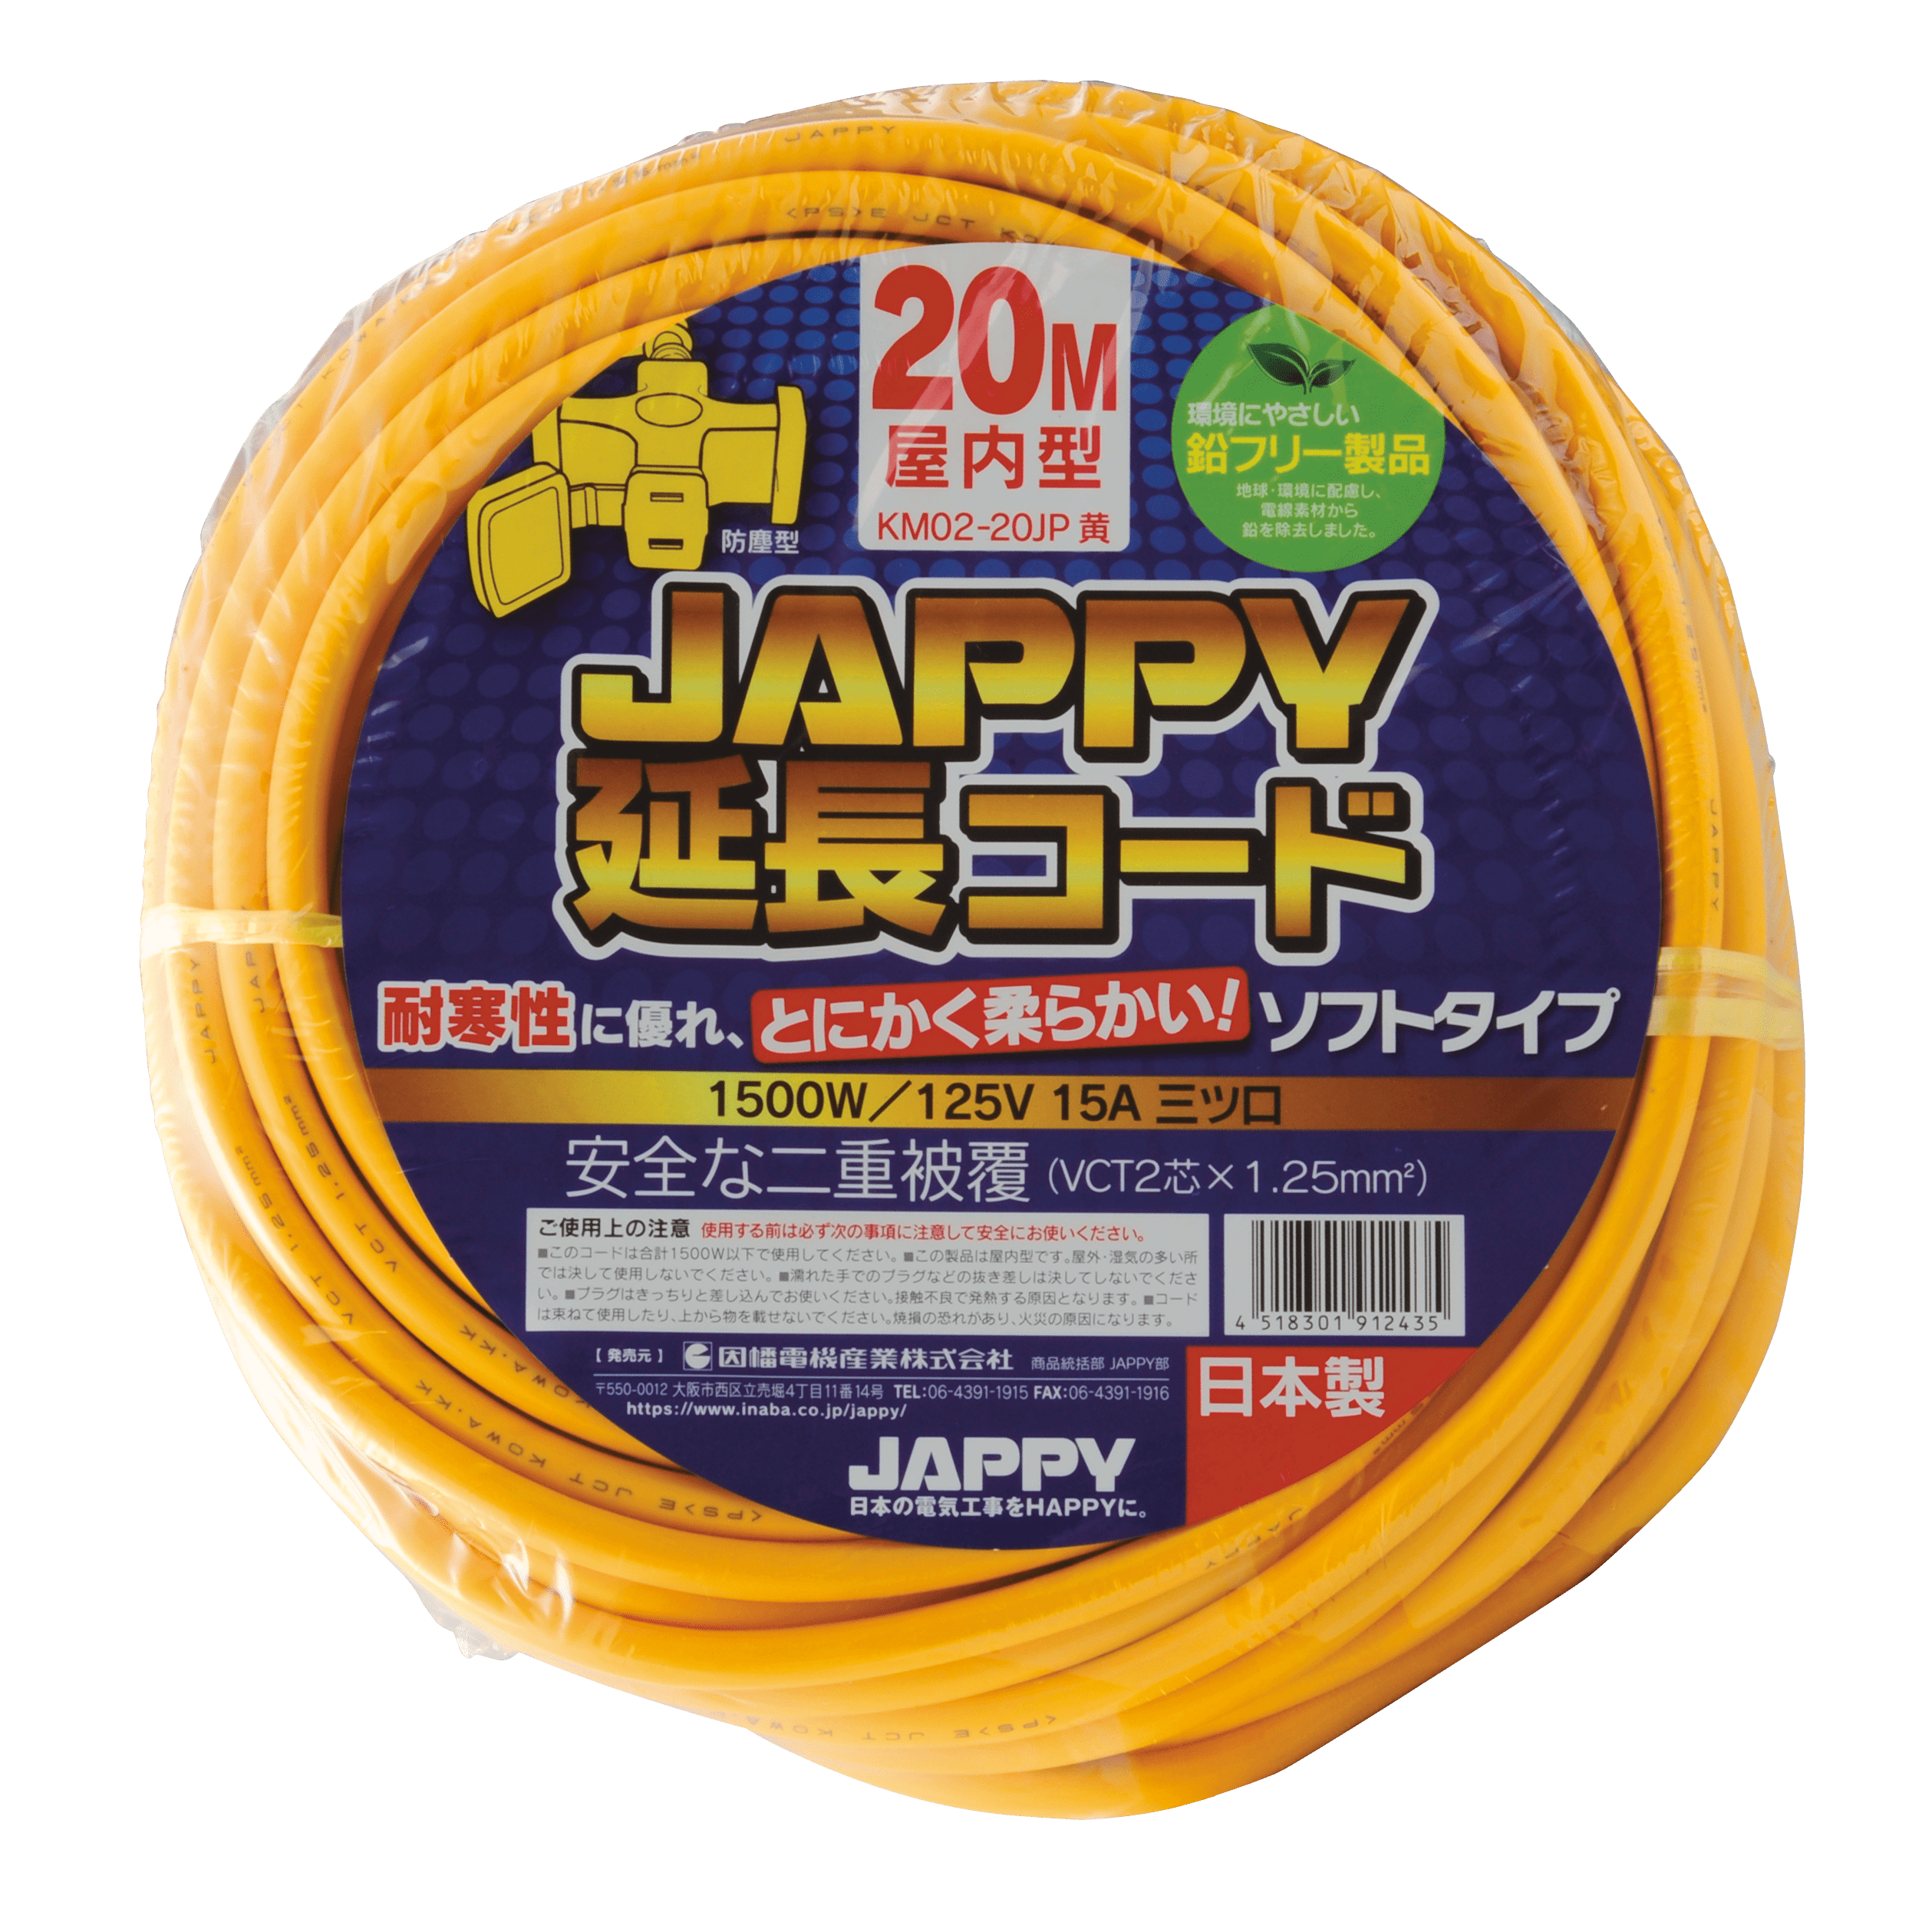 延長コード(ソフトタイプ) KM02-20JP 20M キ | inaba_jappy | JAPPY